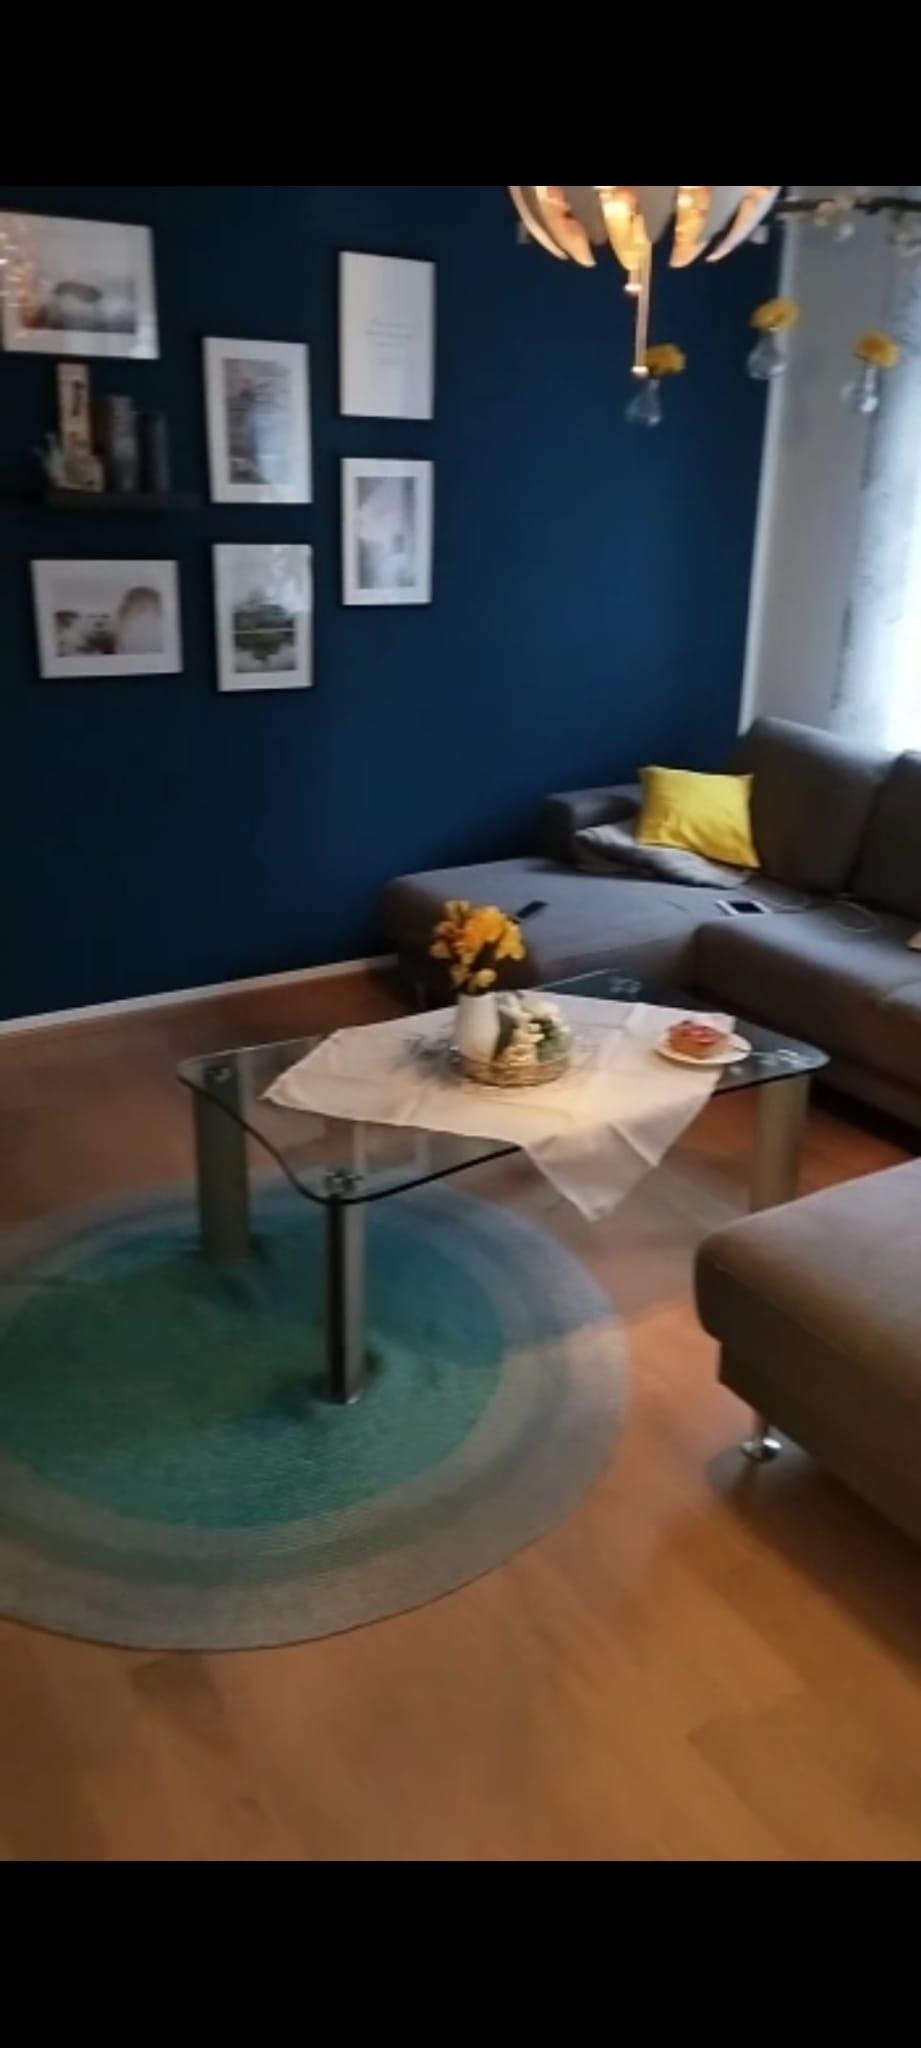 Mir gefällt die Wandfarbe. Das Sofa ist mir zu groß - nach der Trennung war alles provisorisch #wohnzimmerumstyling